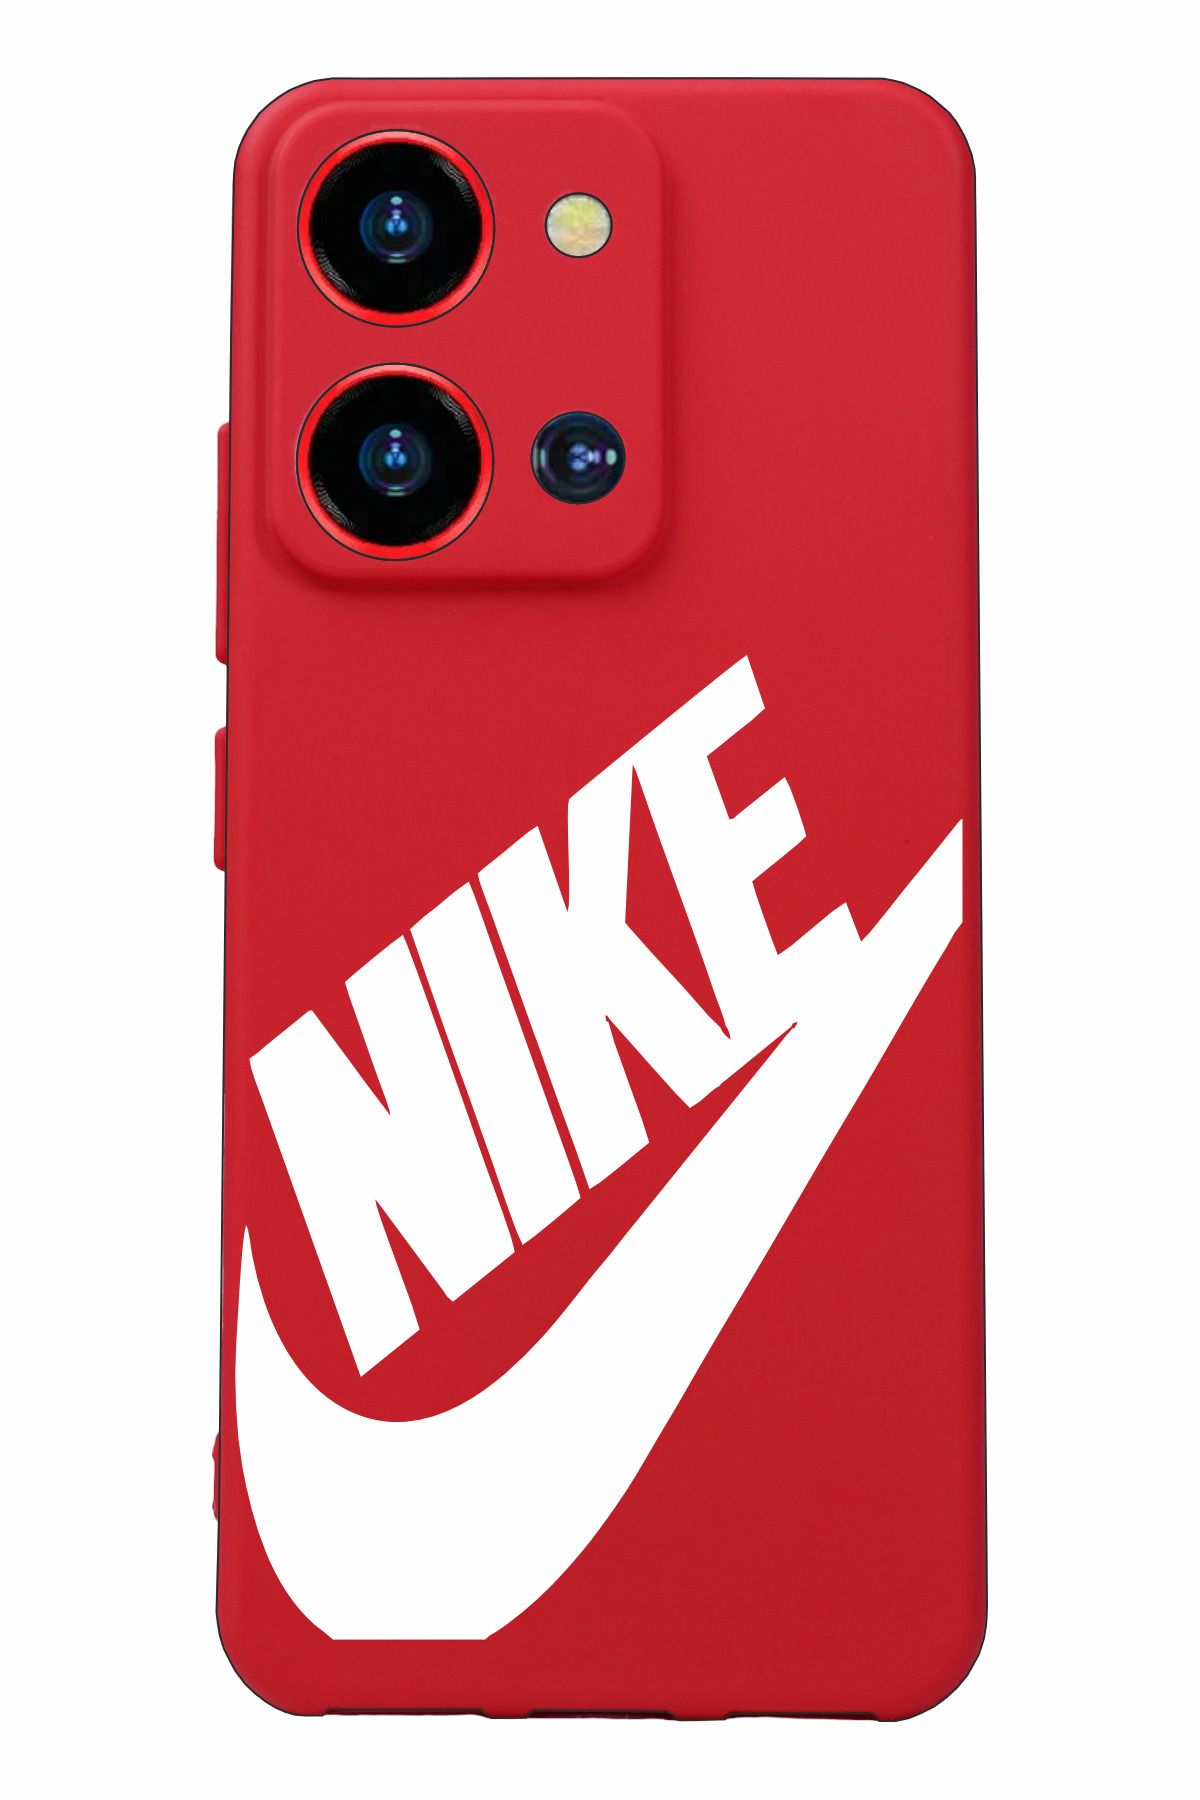 Reeder S19 Max Pro S Zoom Baskılı ve Kamera Korumalı Kırmızı Renk Silikon Kılıf